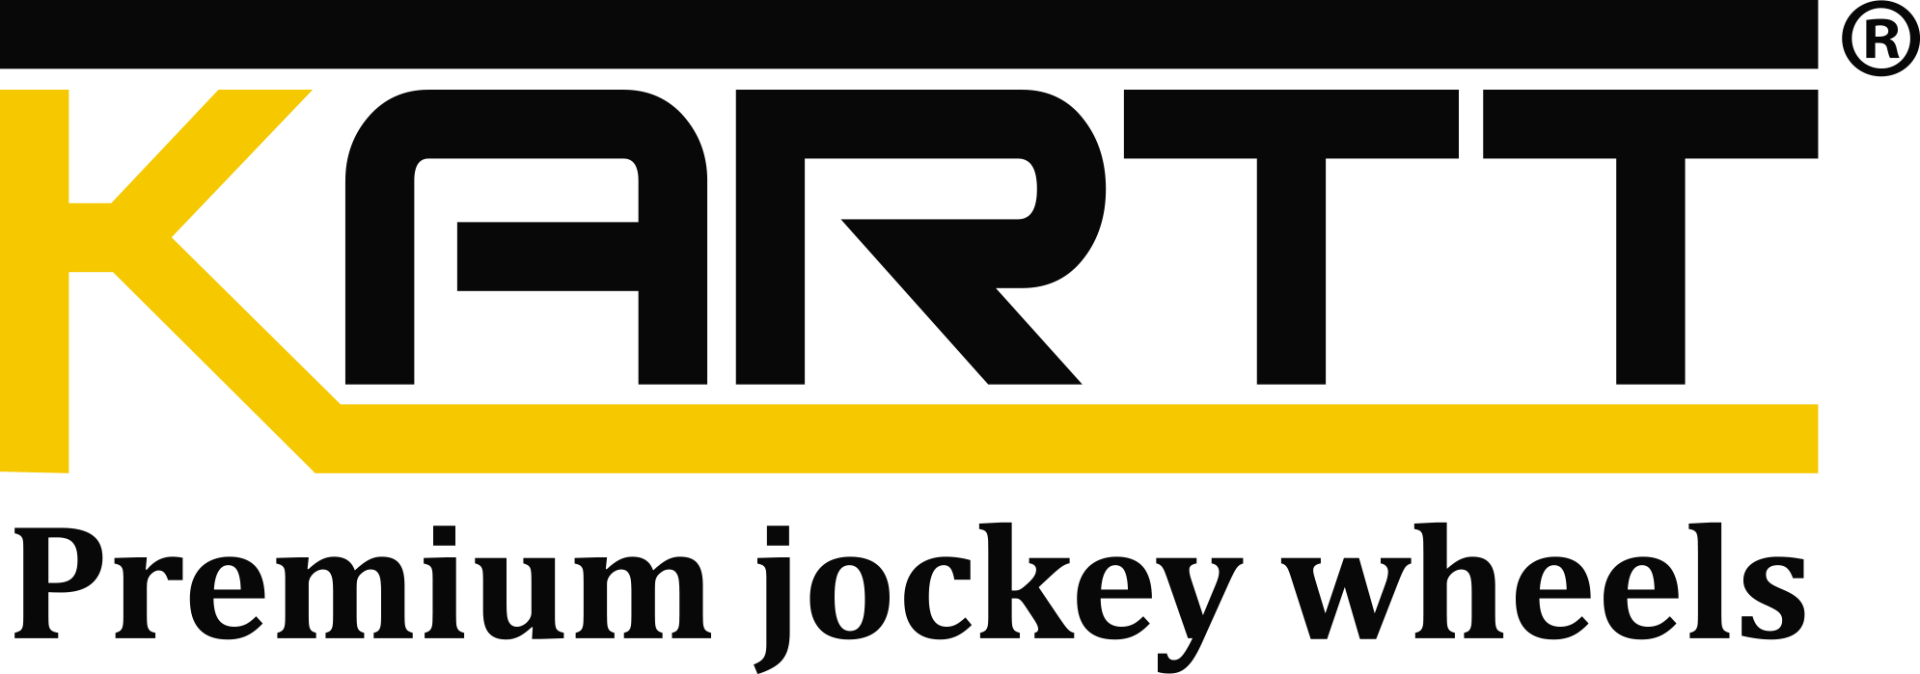 Caravan Jockey Wheel by Kartt and The Caravan and Motorhome Club